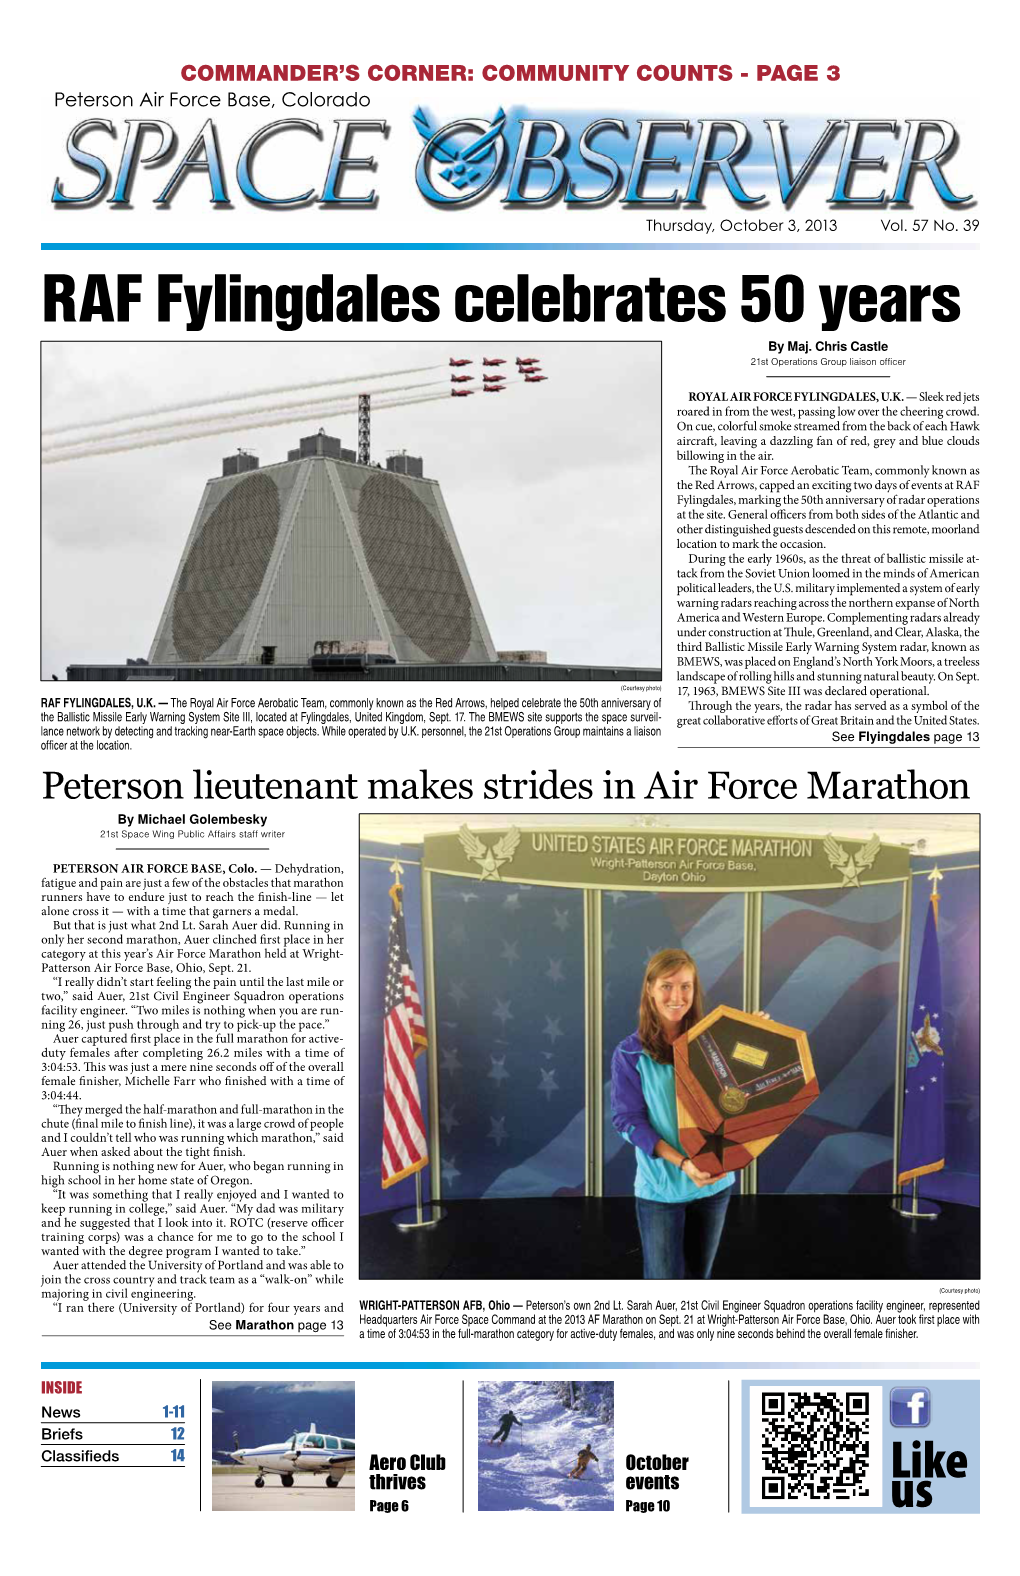 RAF Fylingdales Celebrates 50 Years by Maj